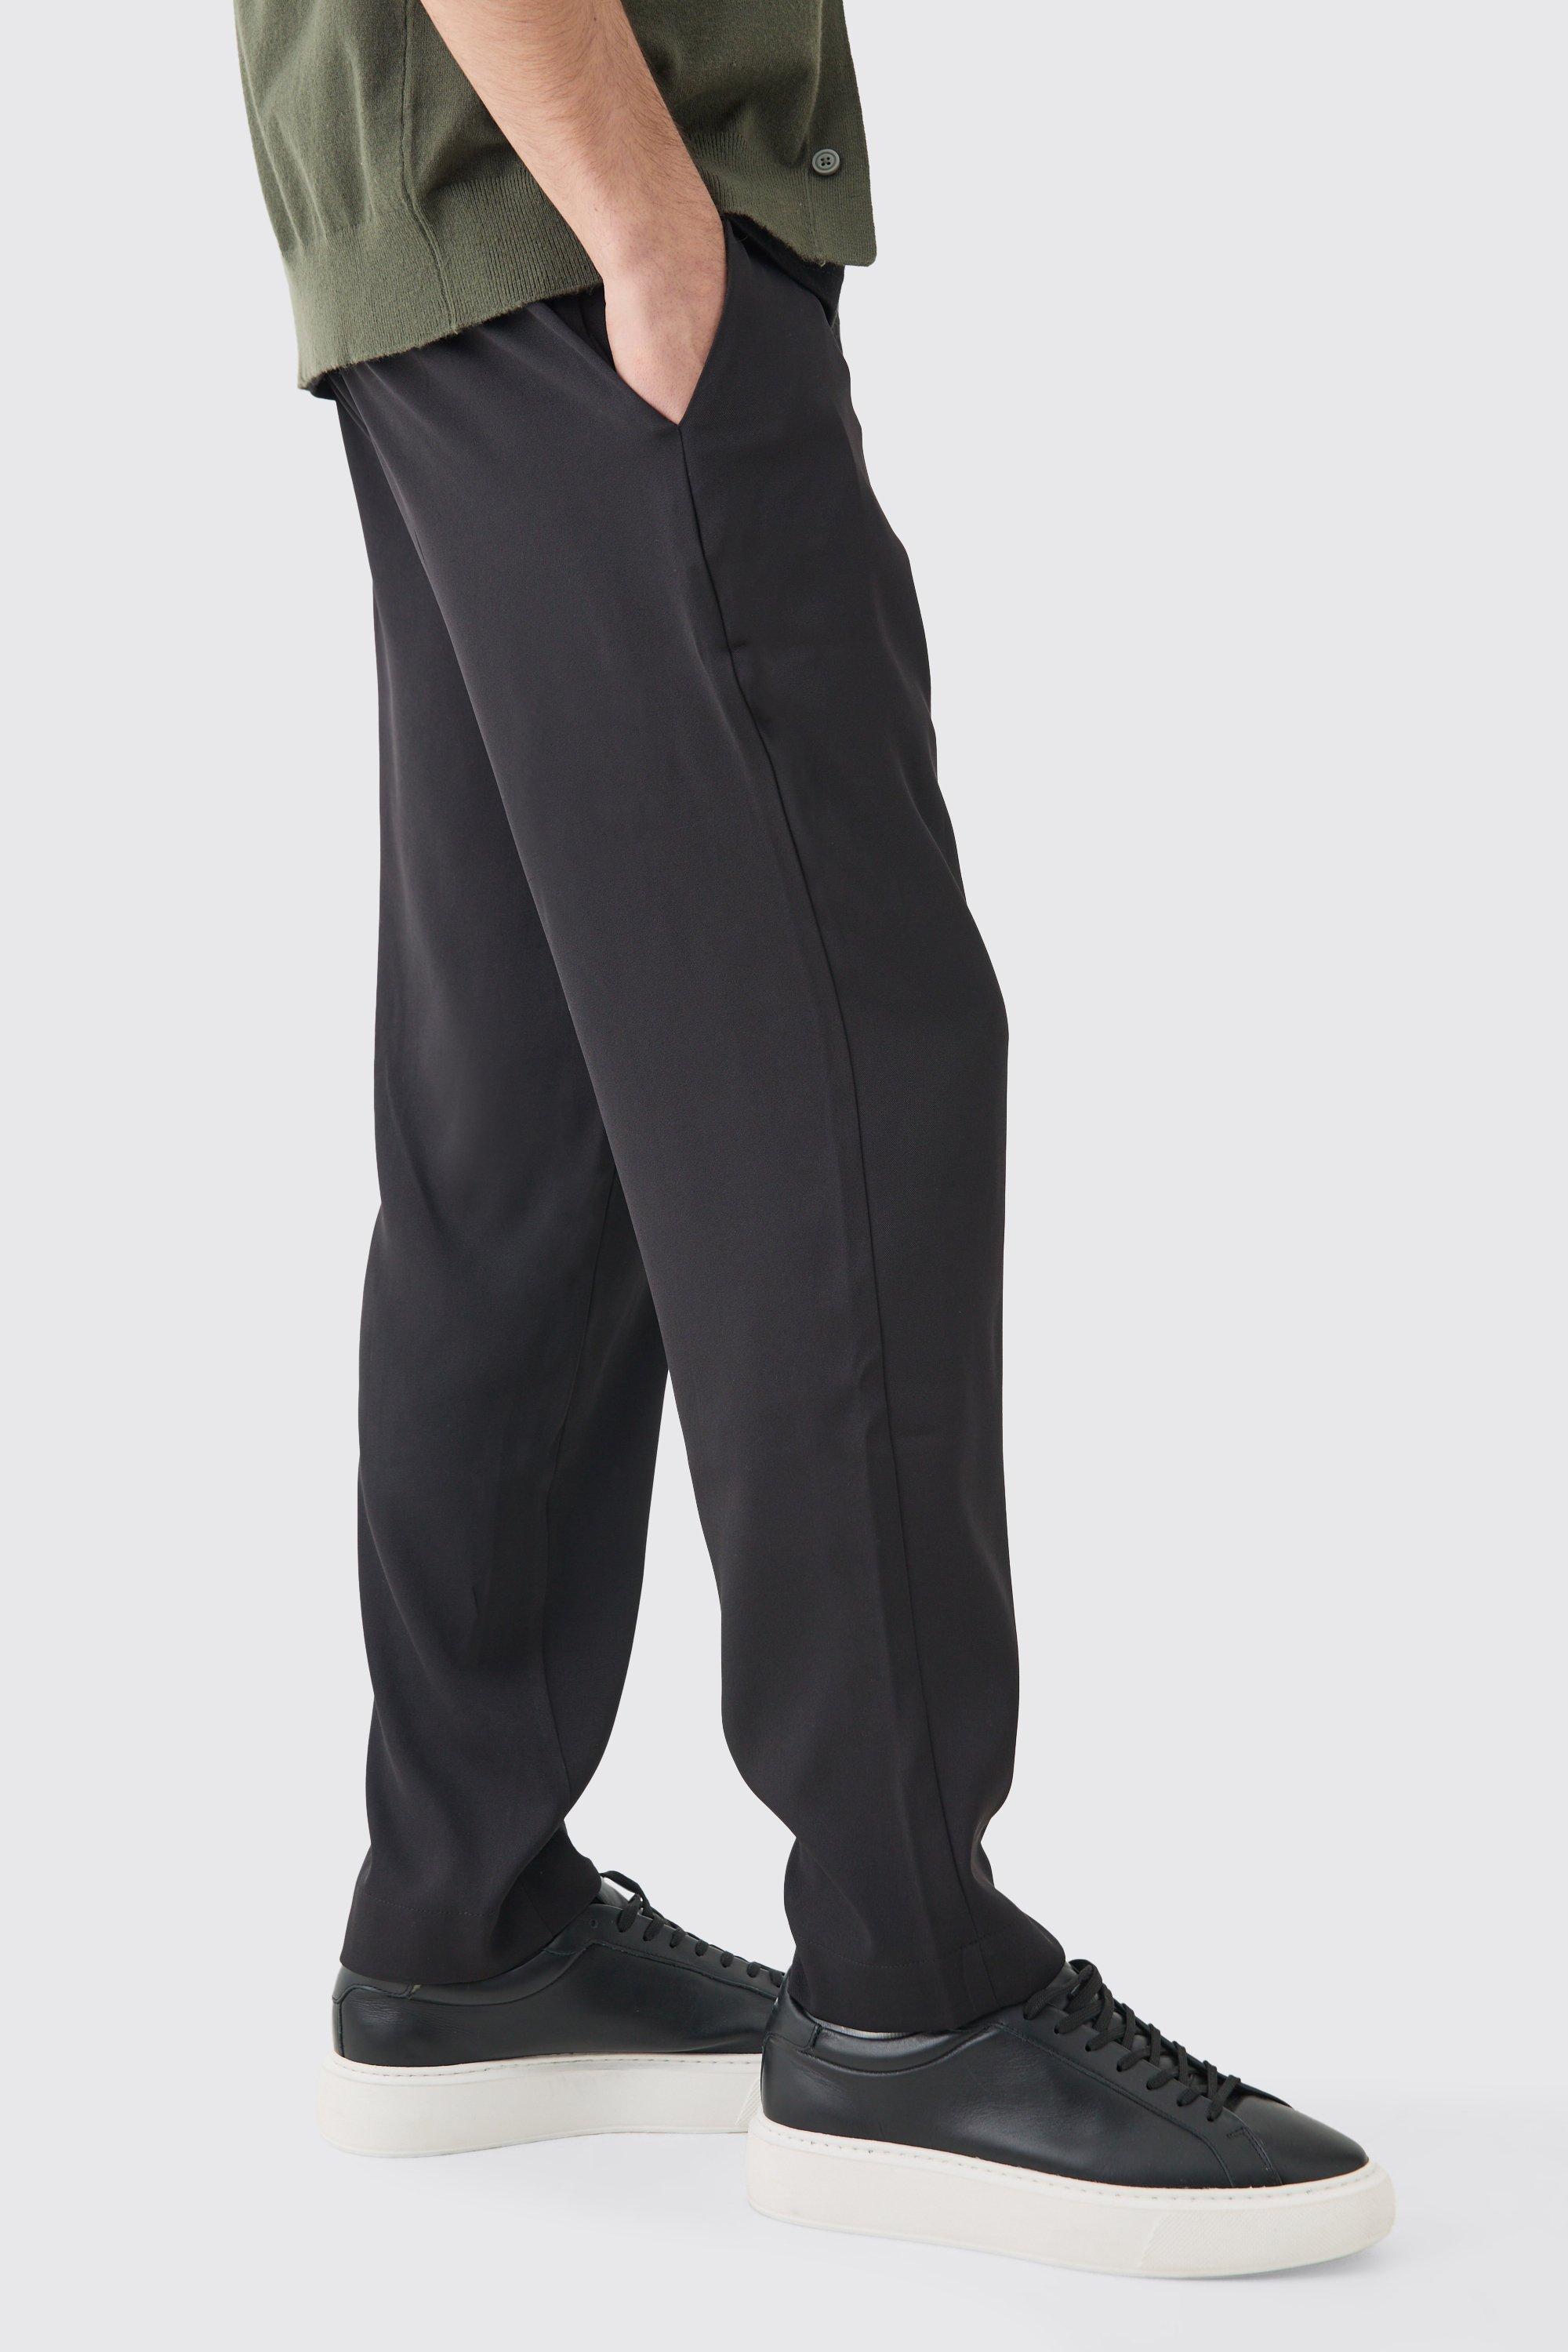 pantalon de costume court - mix & match homme - noir - 36, noir